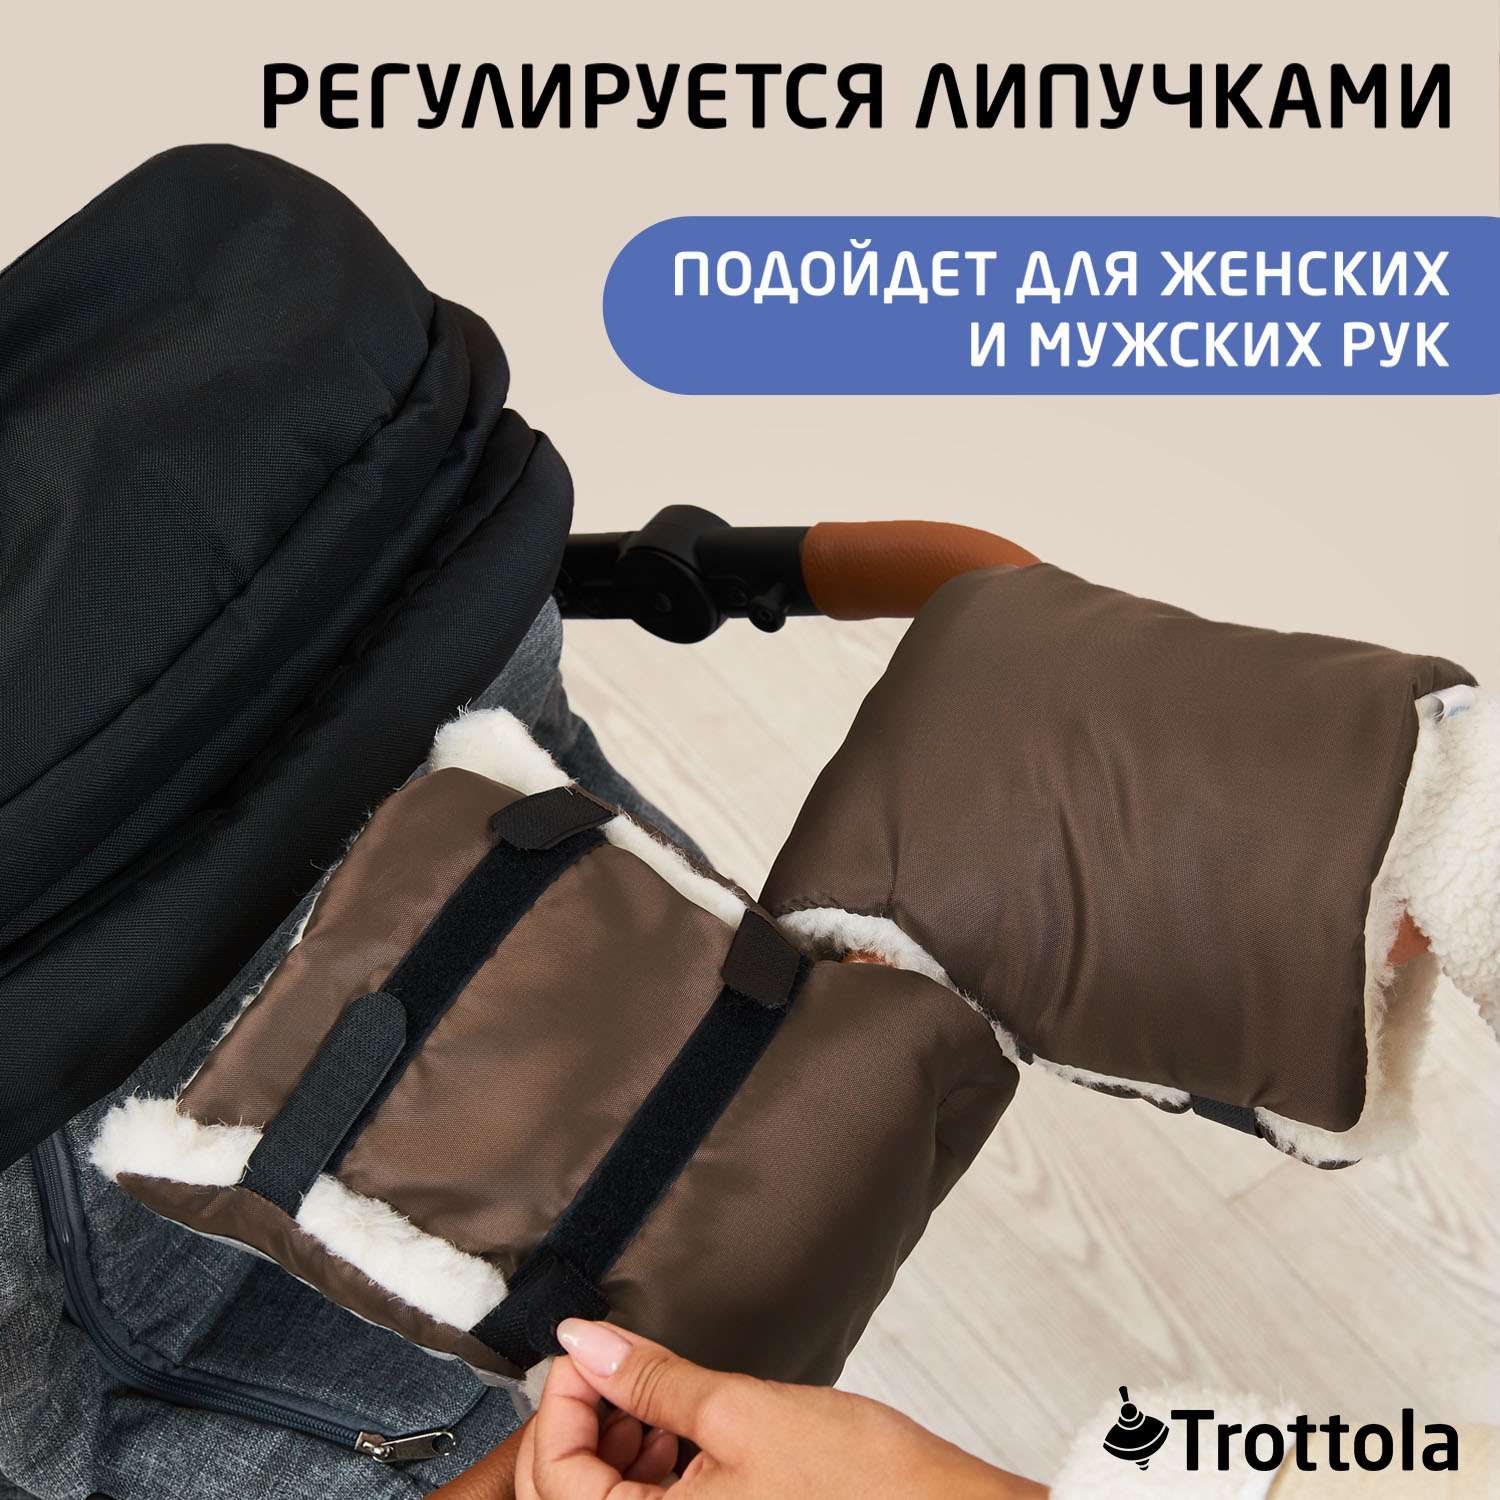 Муфты-варежки для рук Trottola коричневые на коляску Т055/коричневый - фото 7